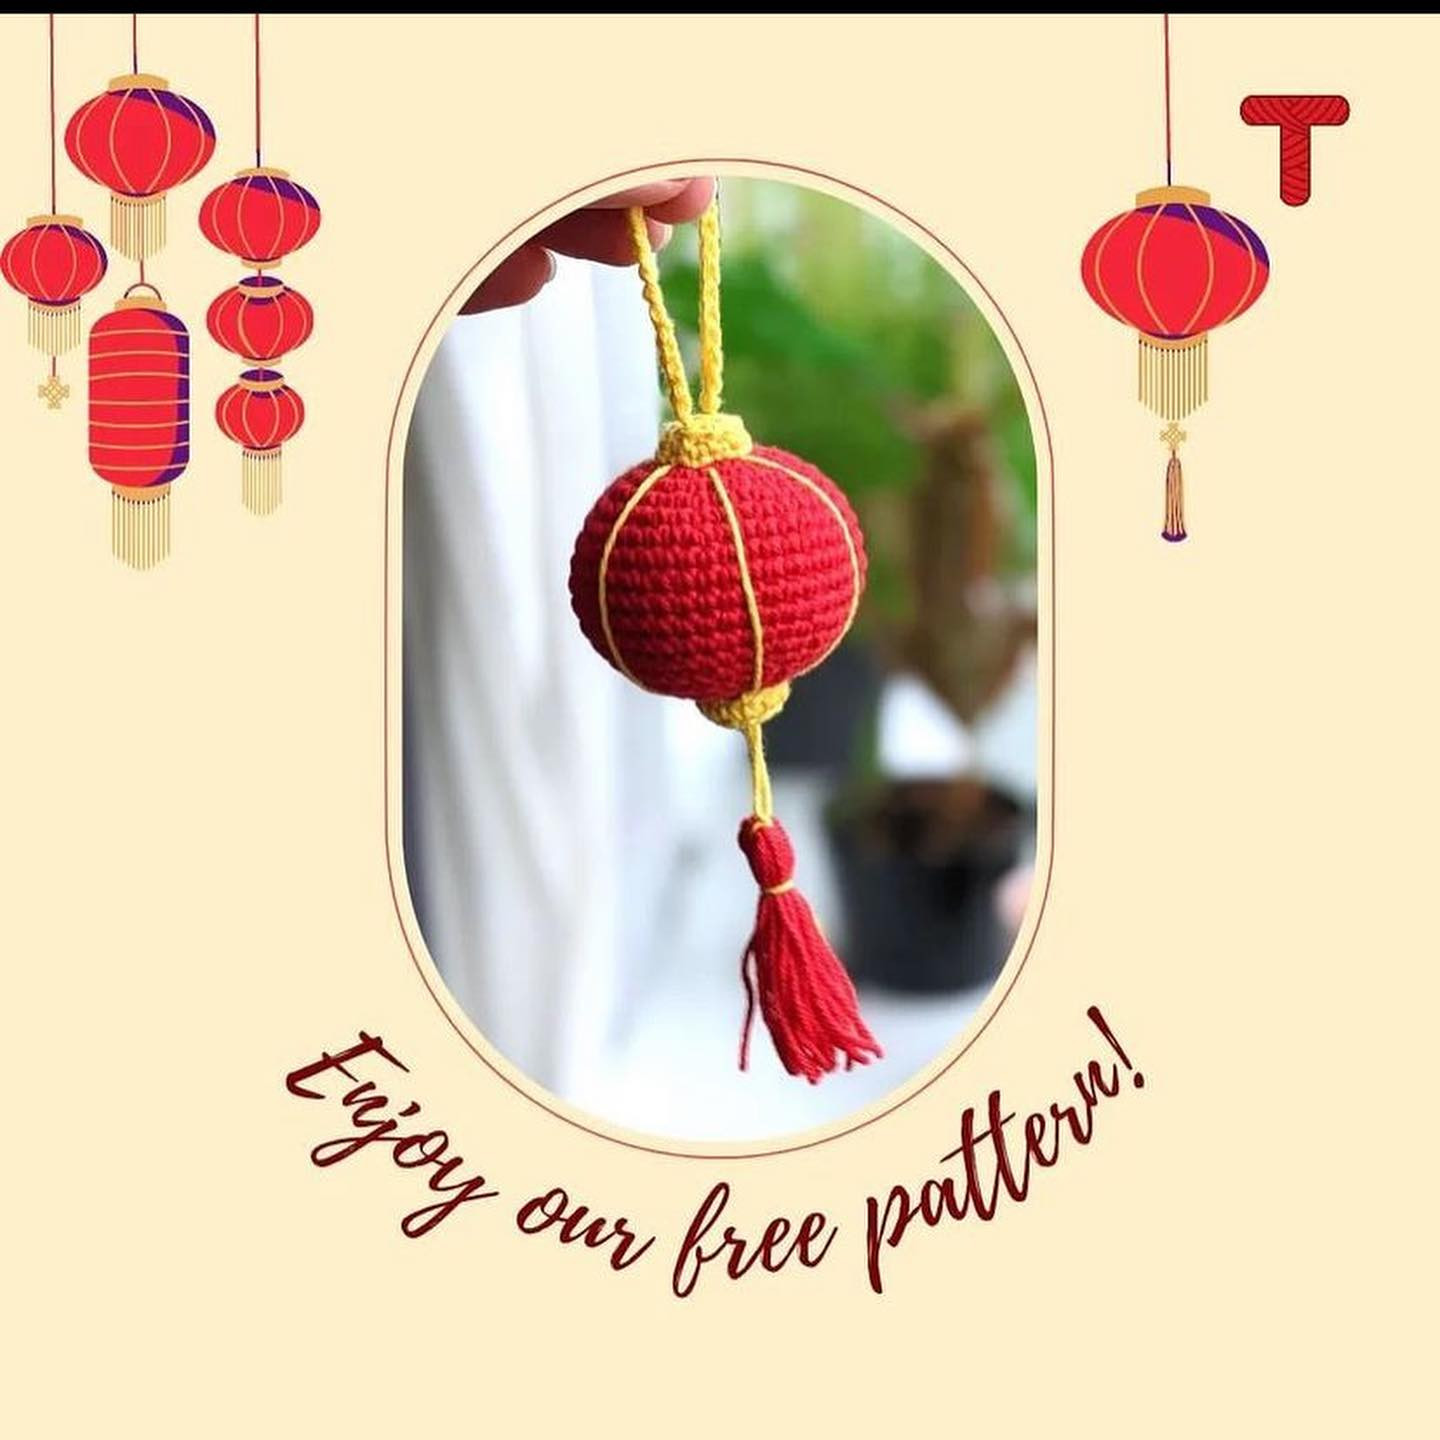 Chinese lantern crochet pattern